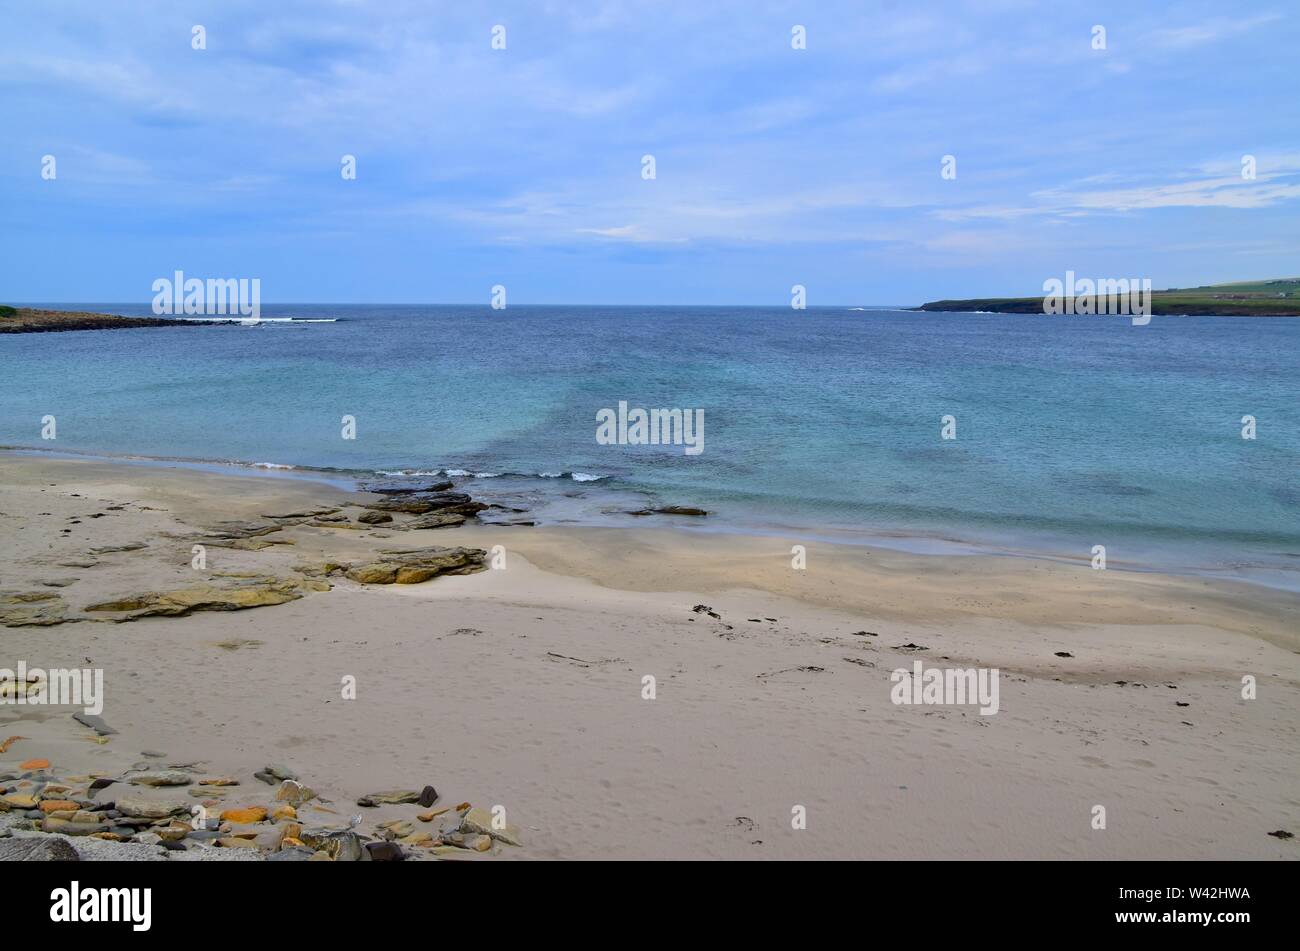 Skaill Bay Beach. Stock Photo